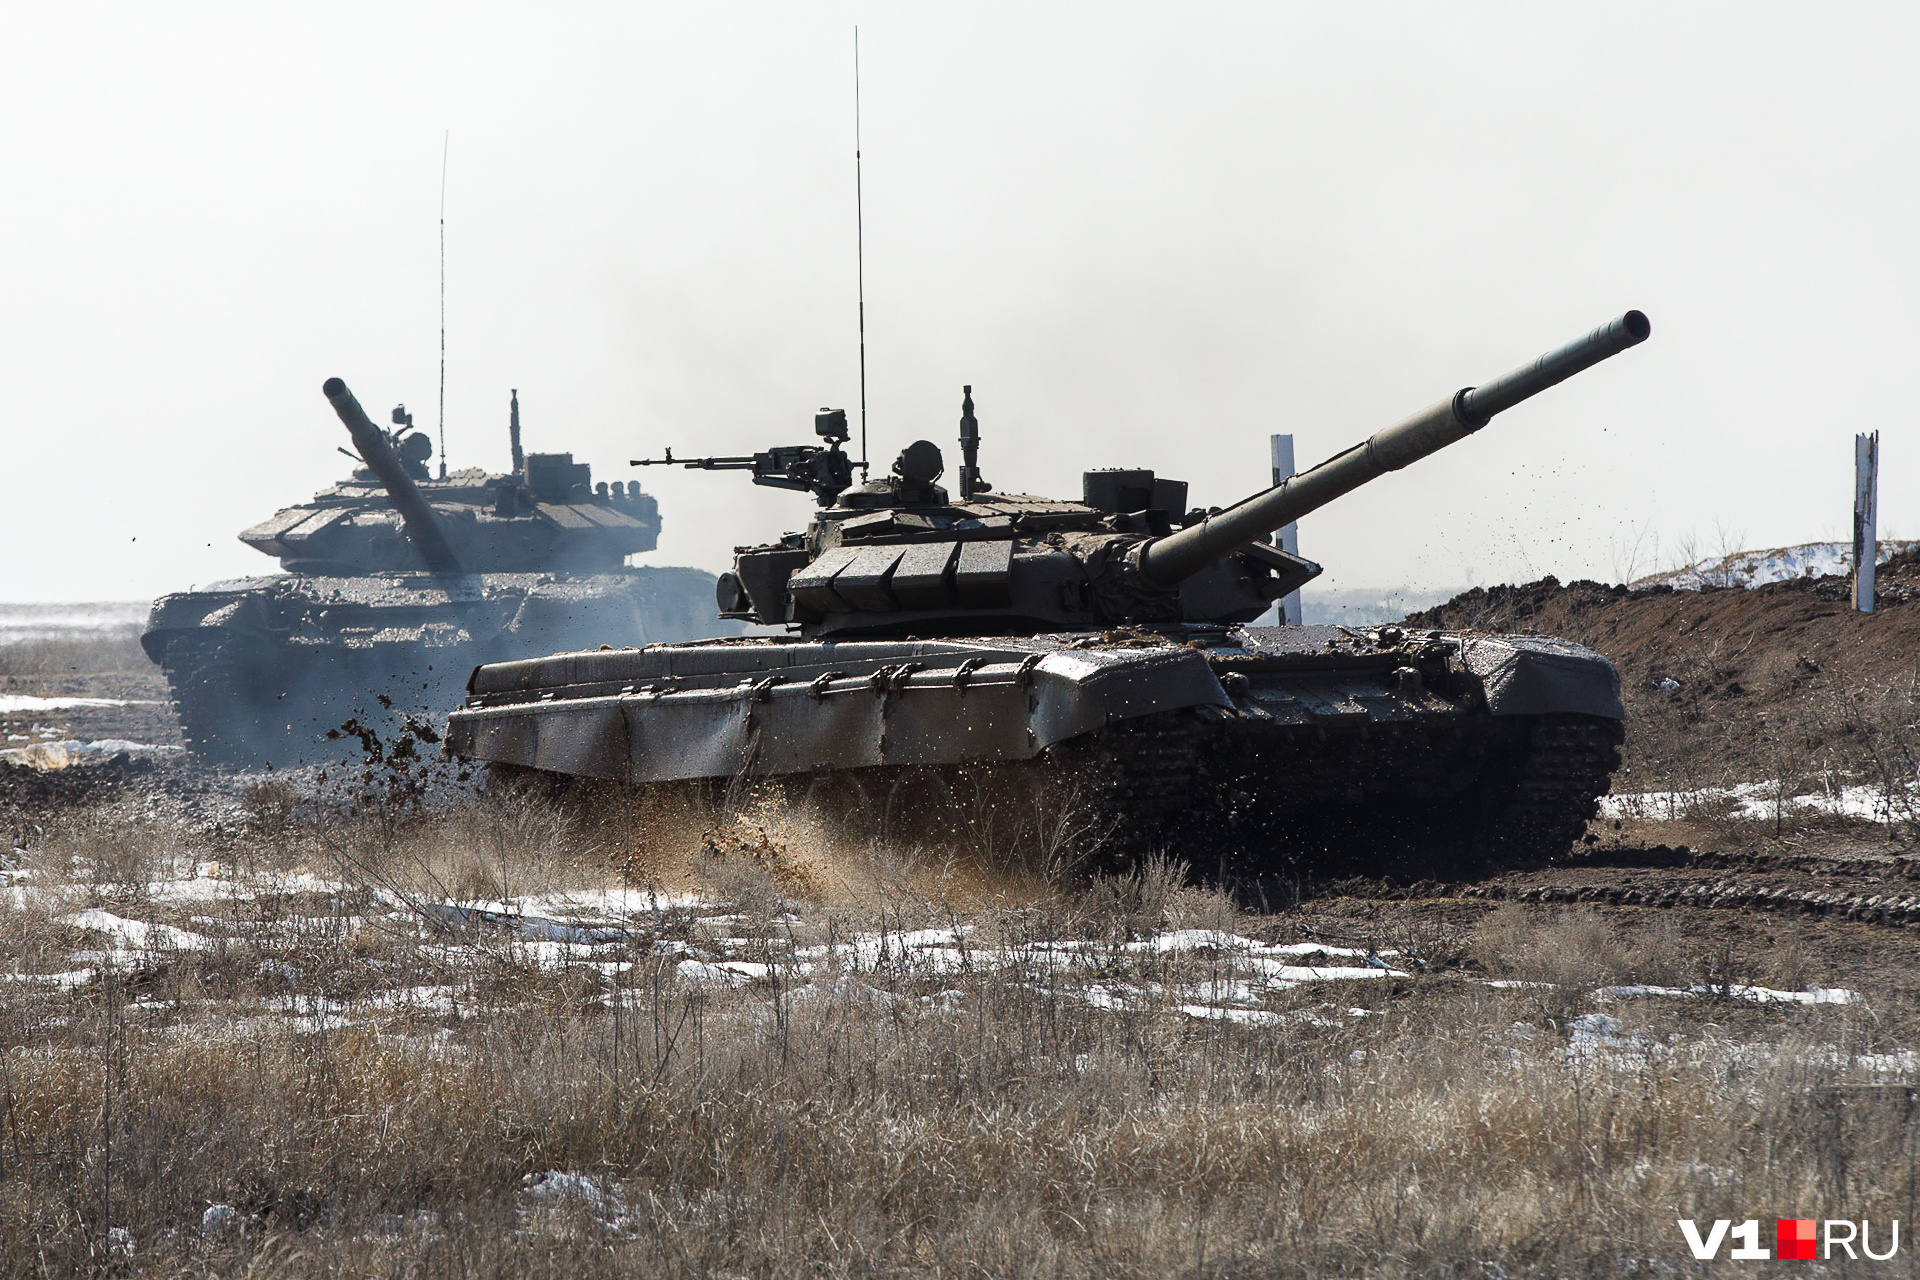 Минобороны заявило, что ролики с жалобами российских военных — подделка Украины: новости СВО за 18 февраля